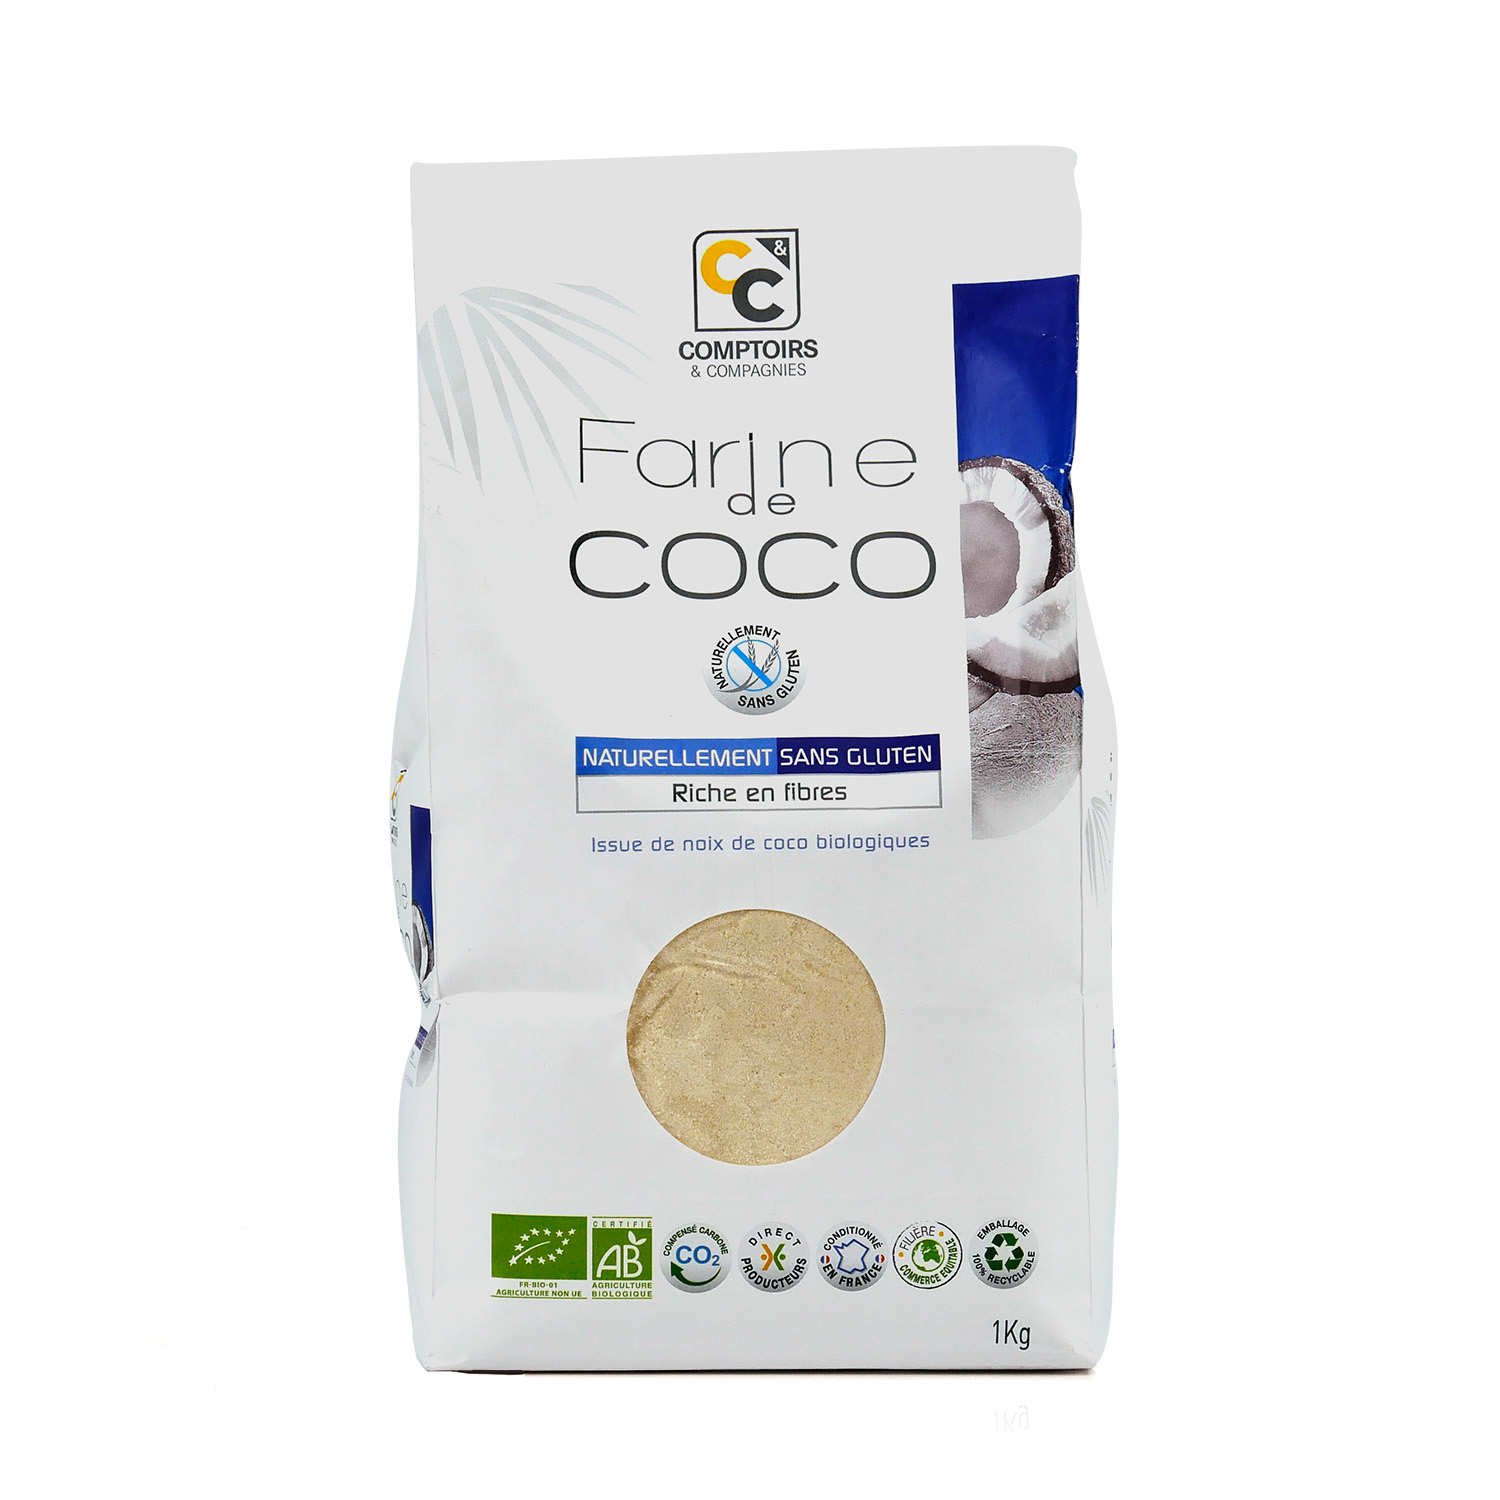 Farine de coco - Bio